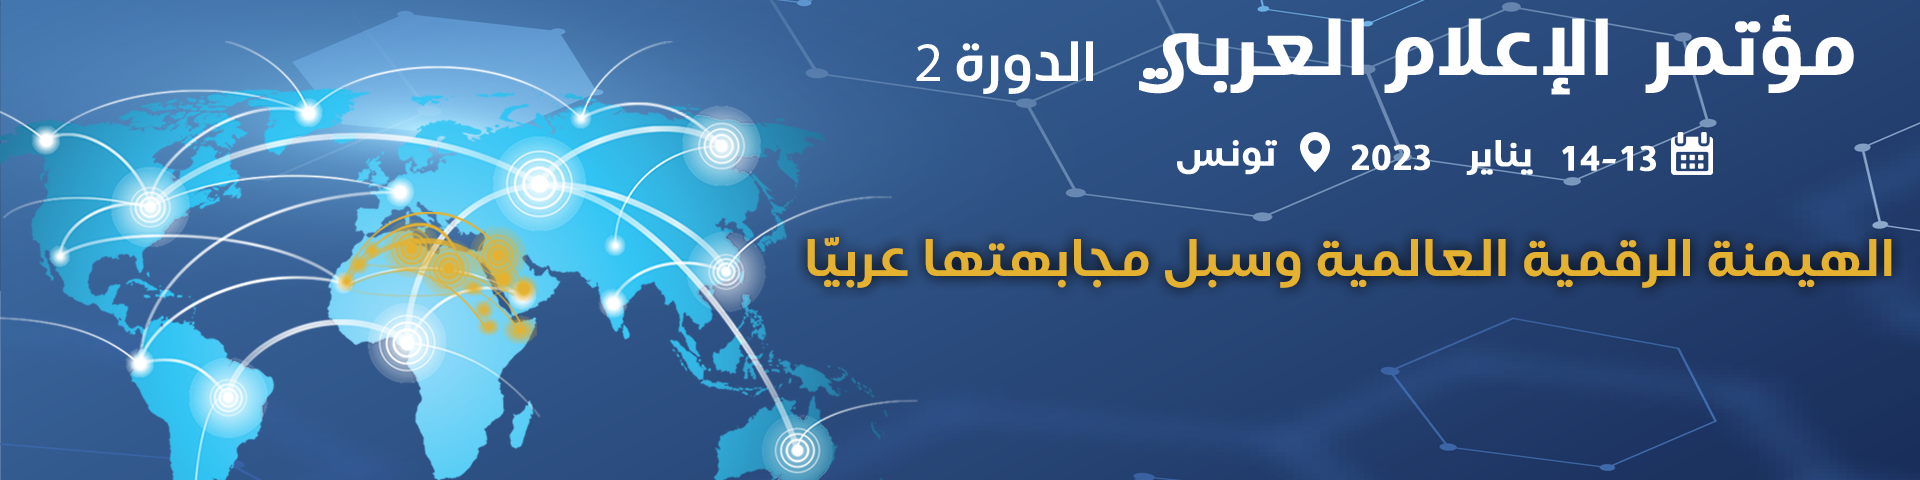 قريبا في تونس اتحاد اذاعات الدول العربية ينظم الدورة الثانية لمؤتمر الاعلام العربي حول " الهيمنة الرقمية العالمية وسبل مجابهتها عربيا 